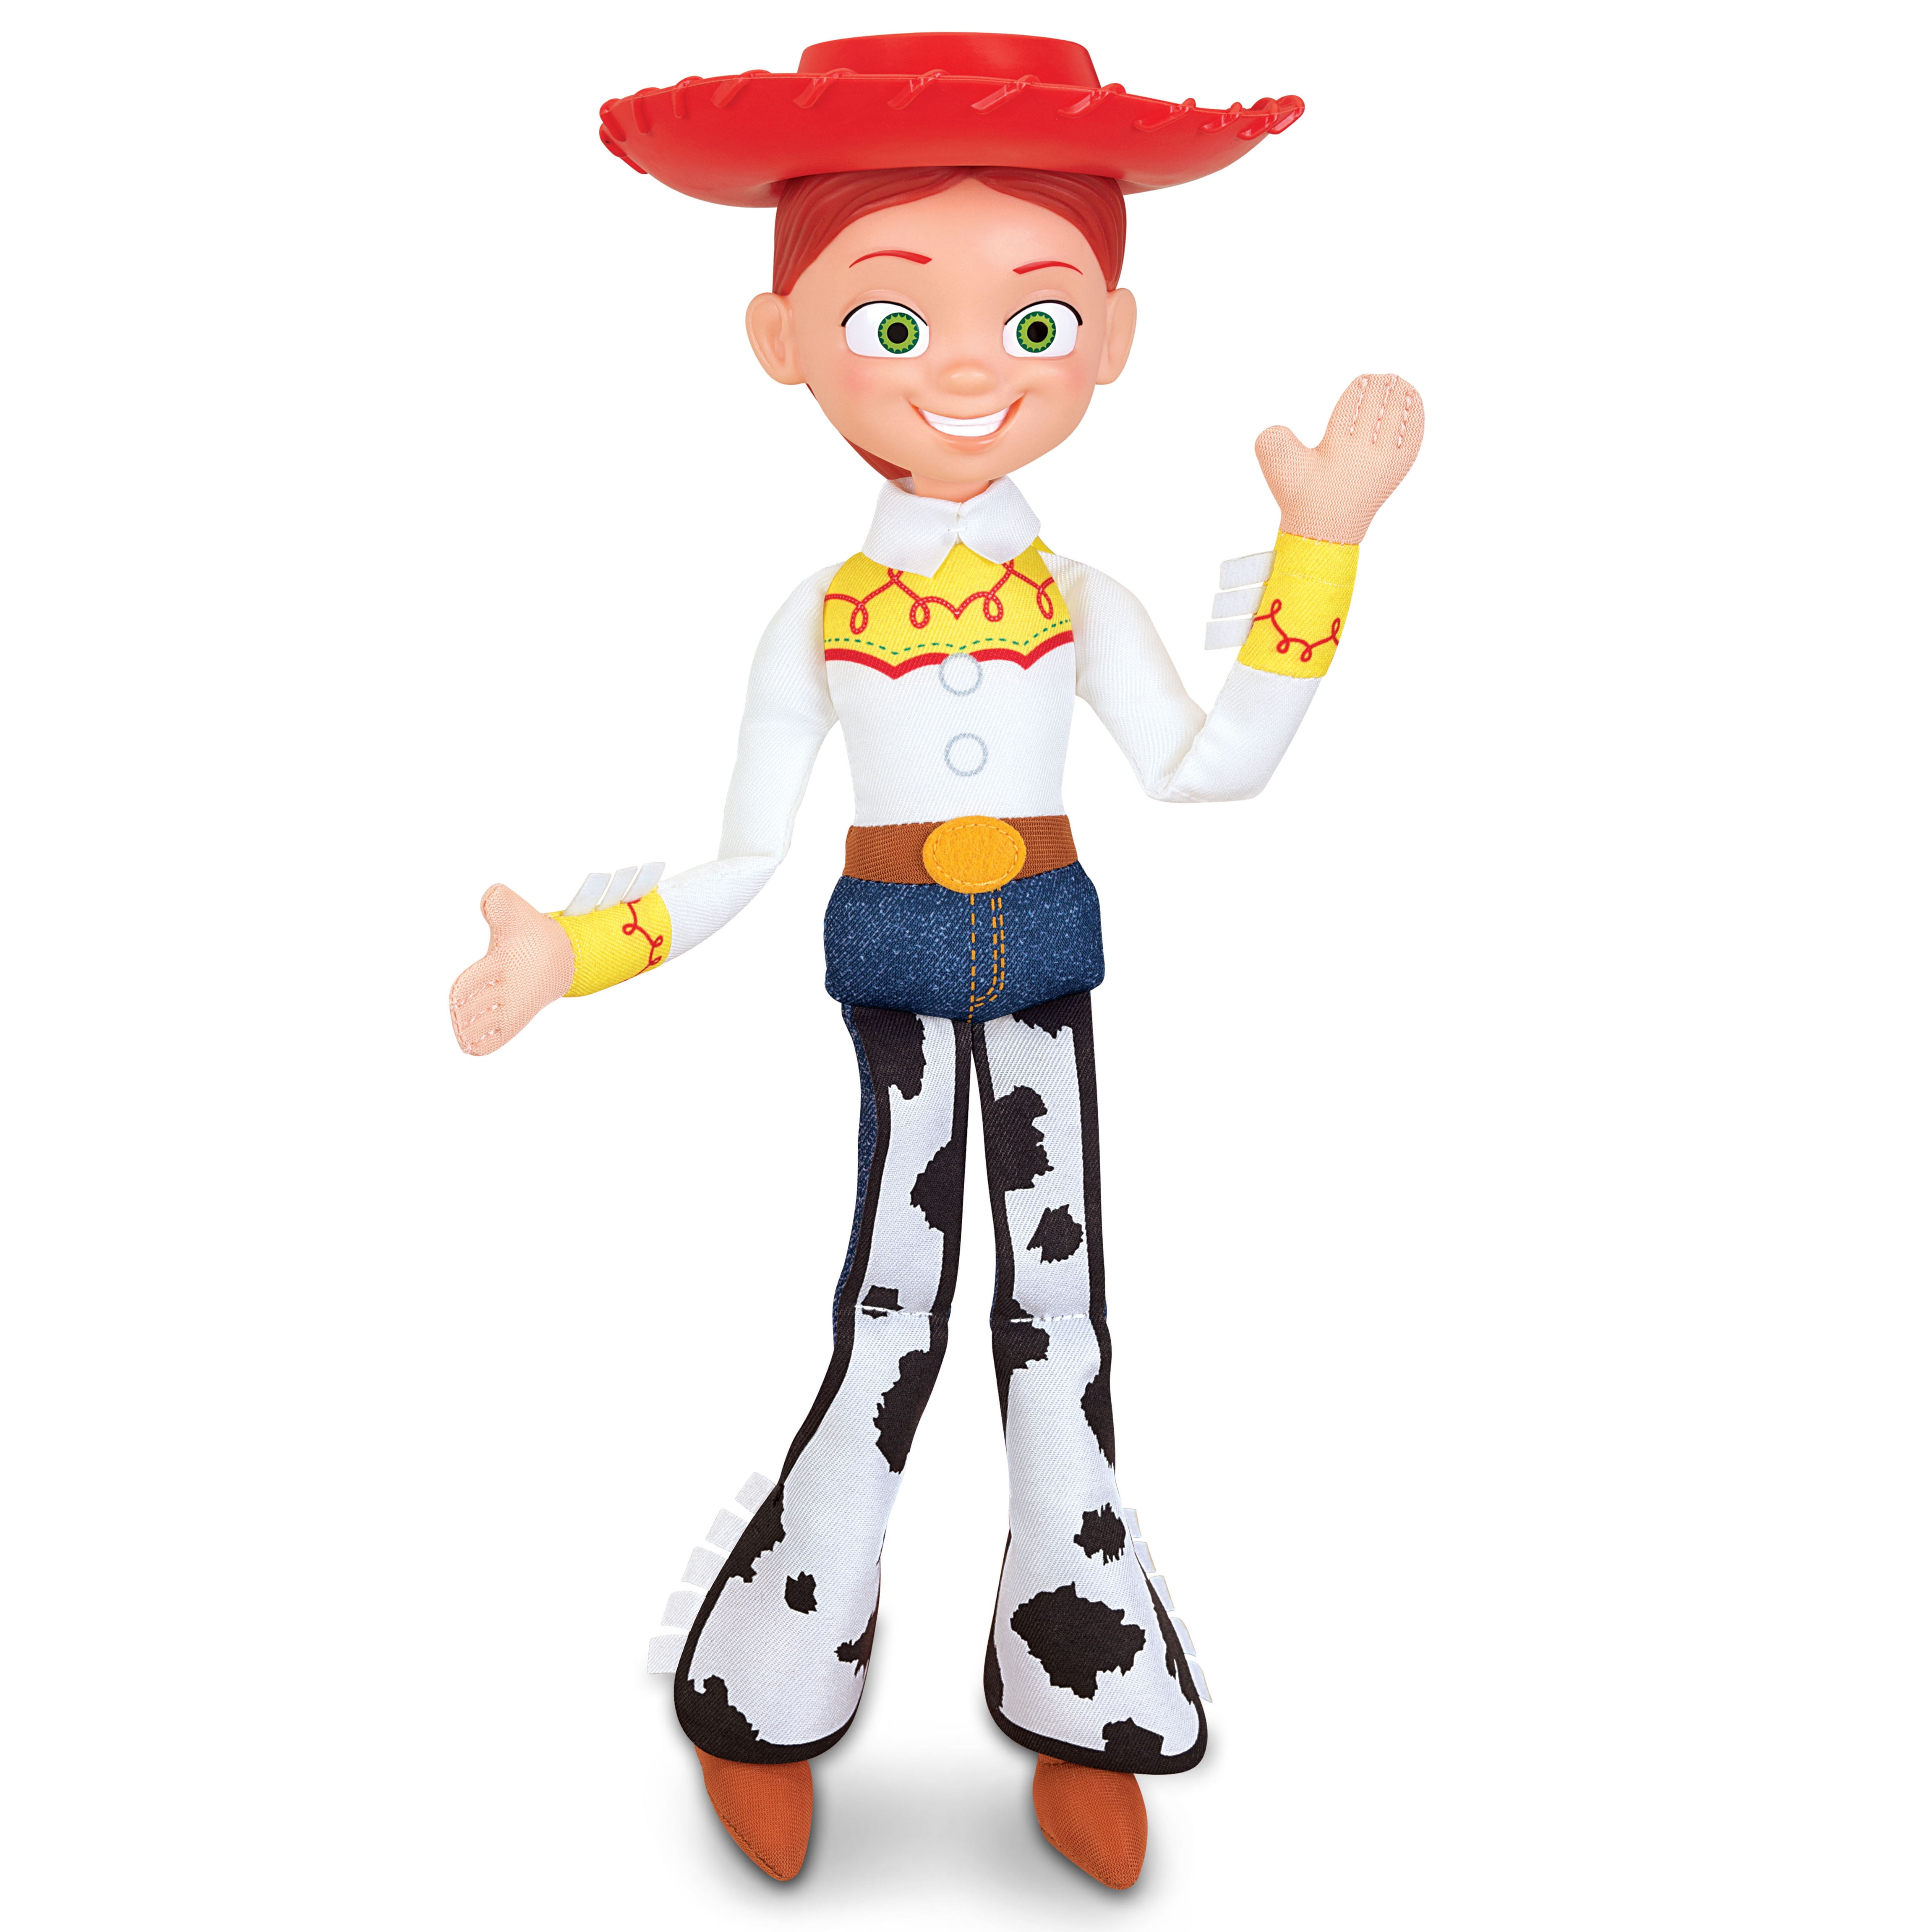 Disney Pixar Toy Story Jessie Action Figure (14